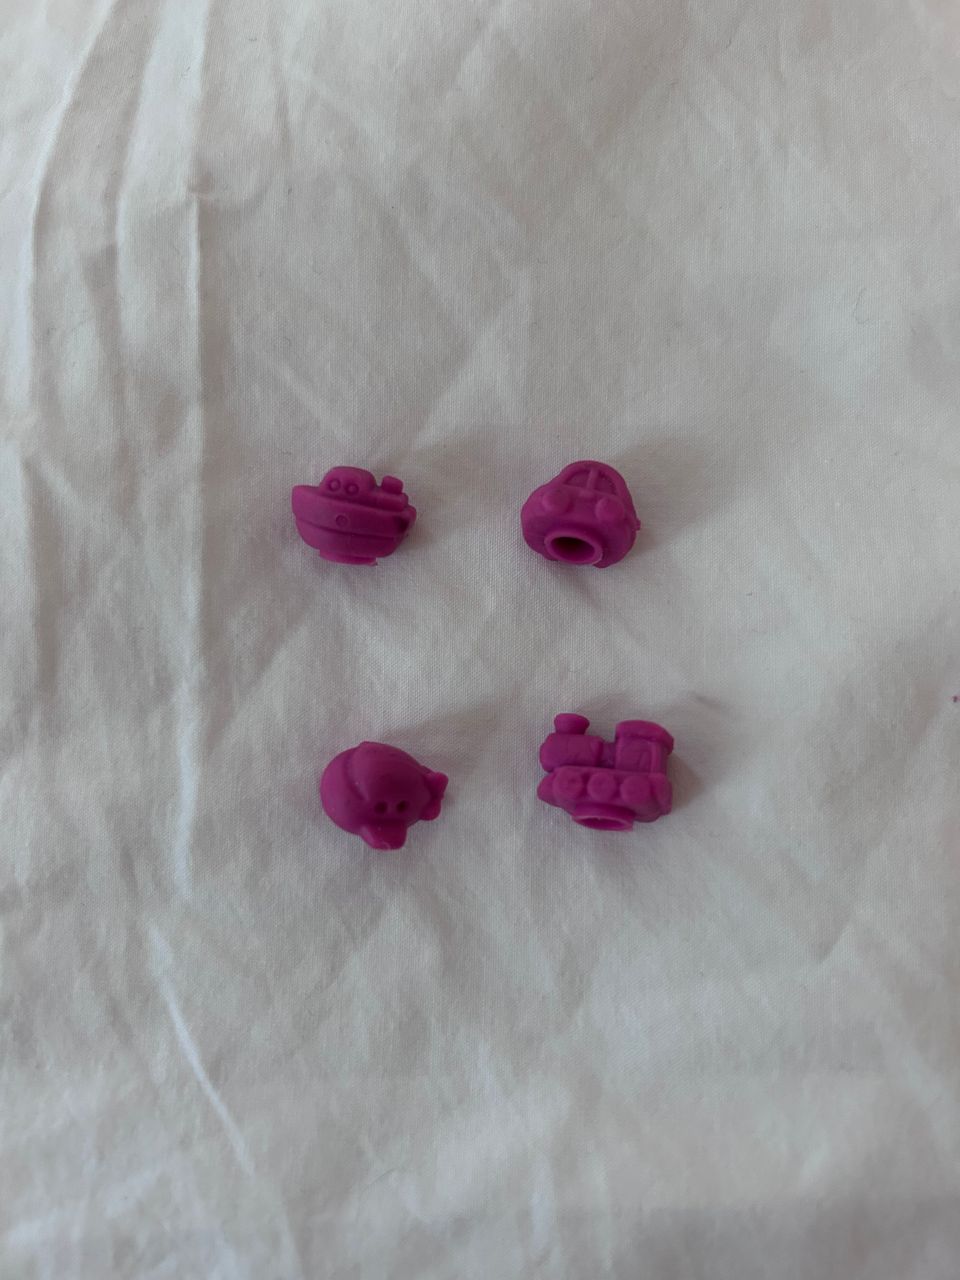 4 kpl pieniä pinkkejä kynäkoristeita / kumeja, uusia